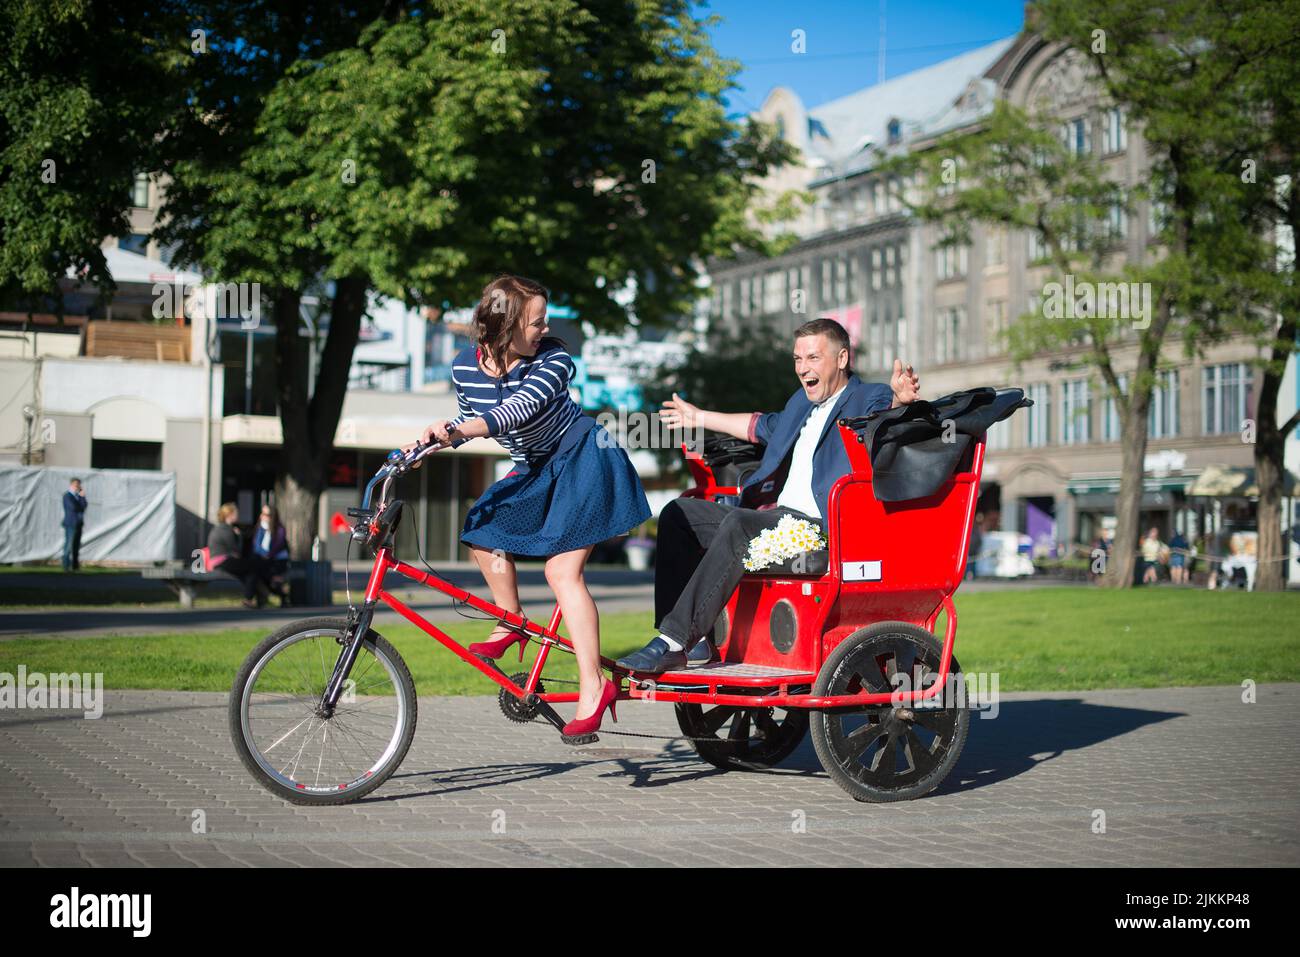 Ein schönes junges Paar, das an einem hellen Tag ein großes Fahrrad in der Stadt fährt - Konzept der Liebe Stockfoto